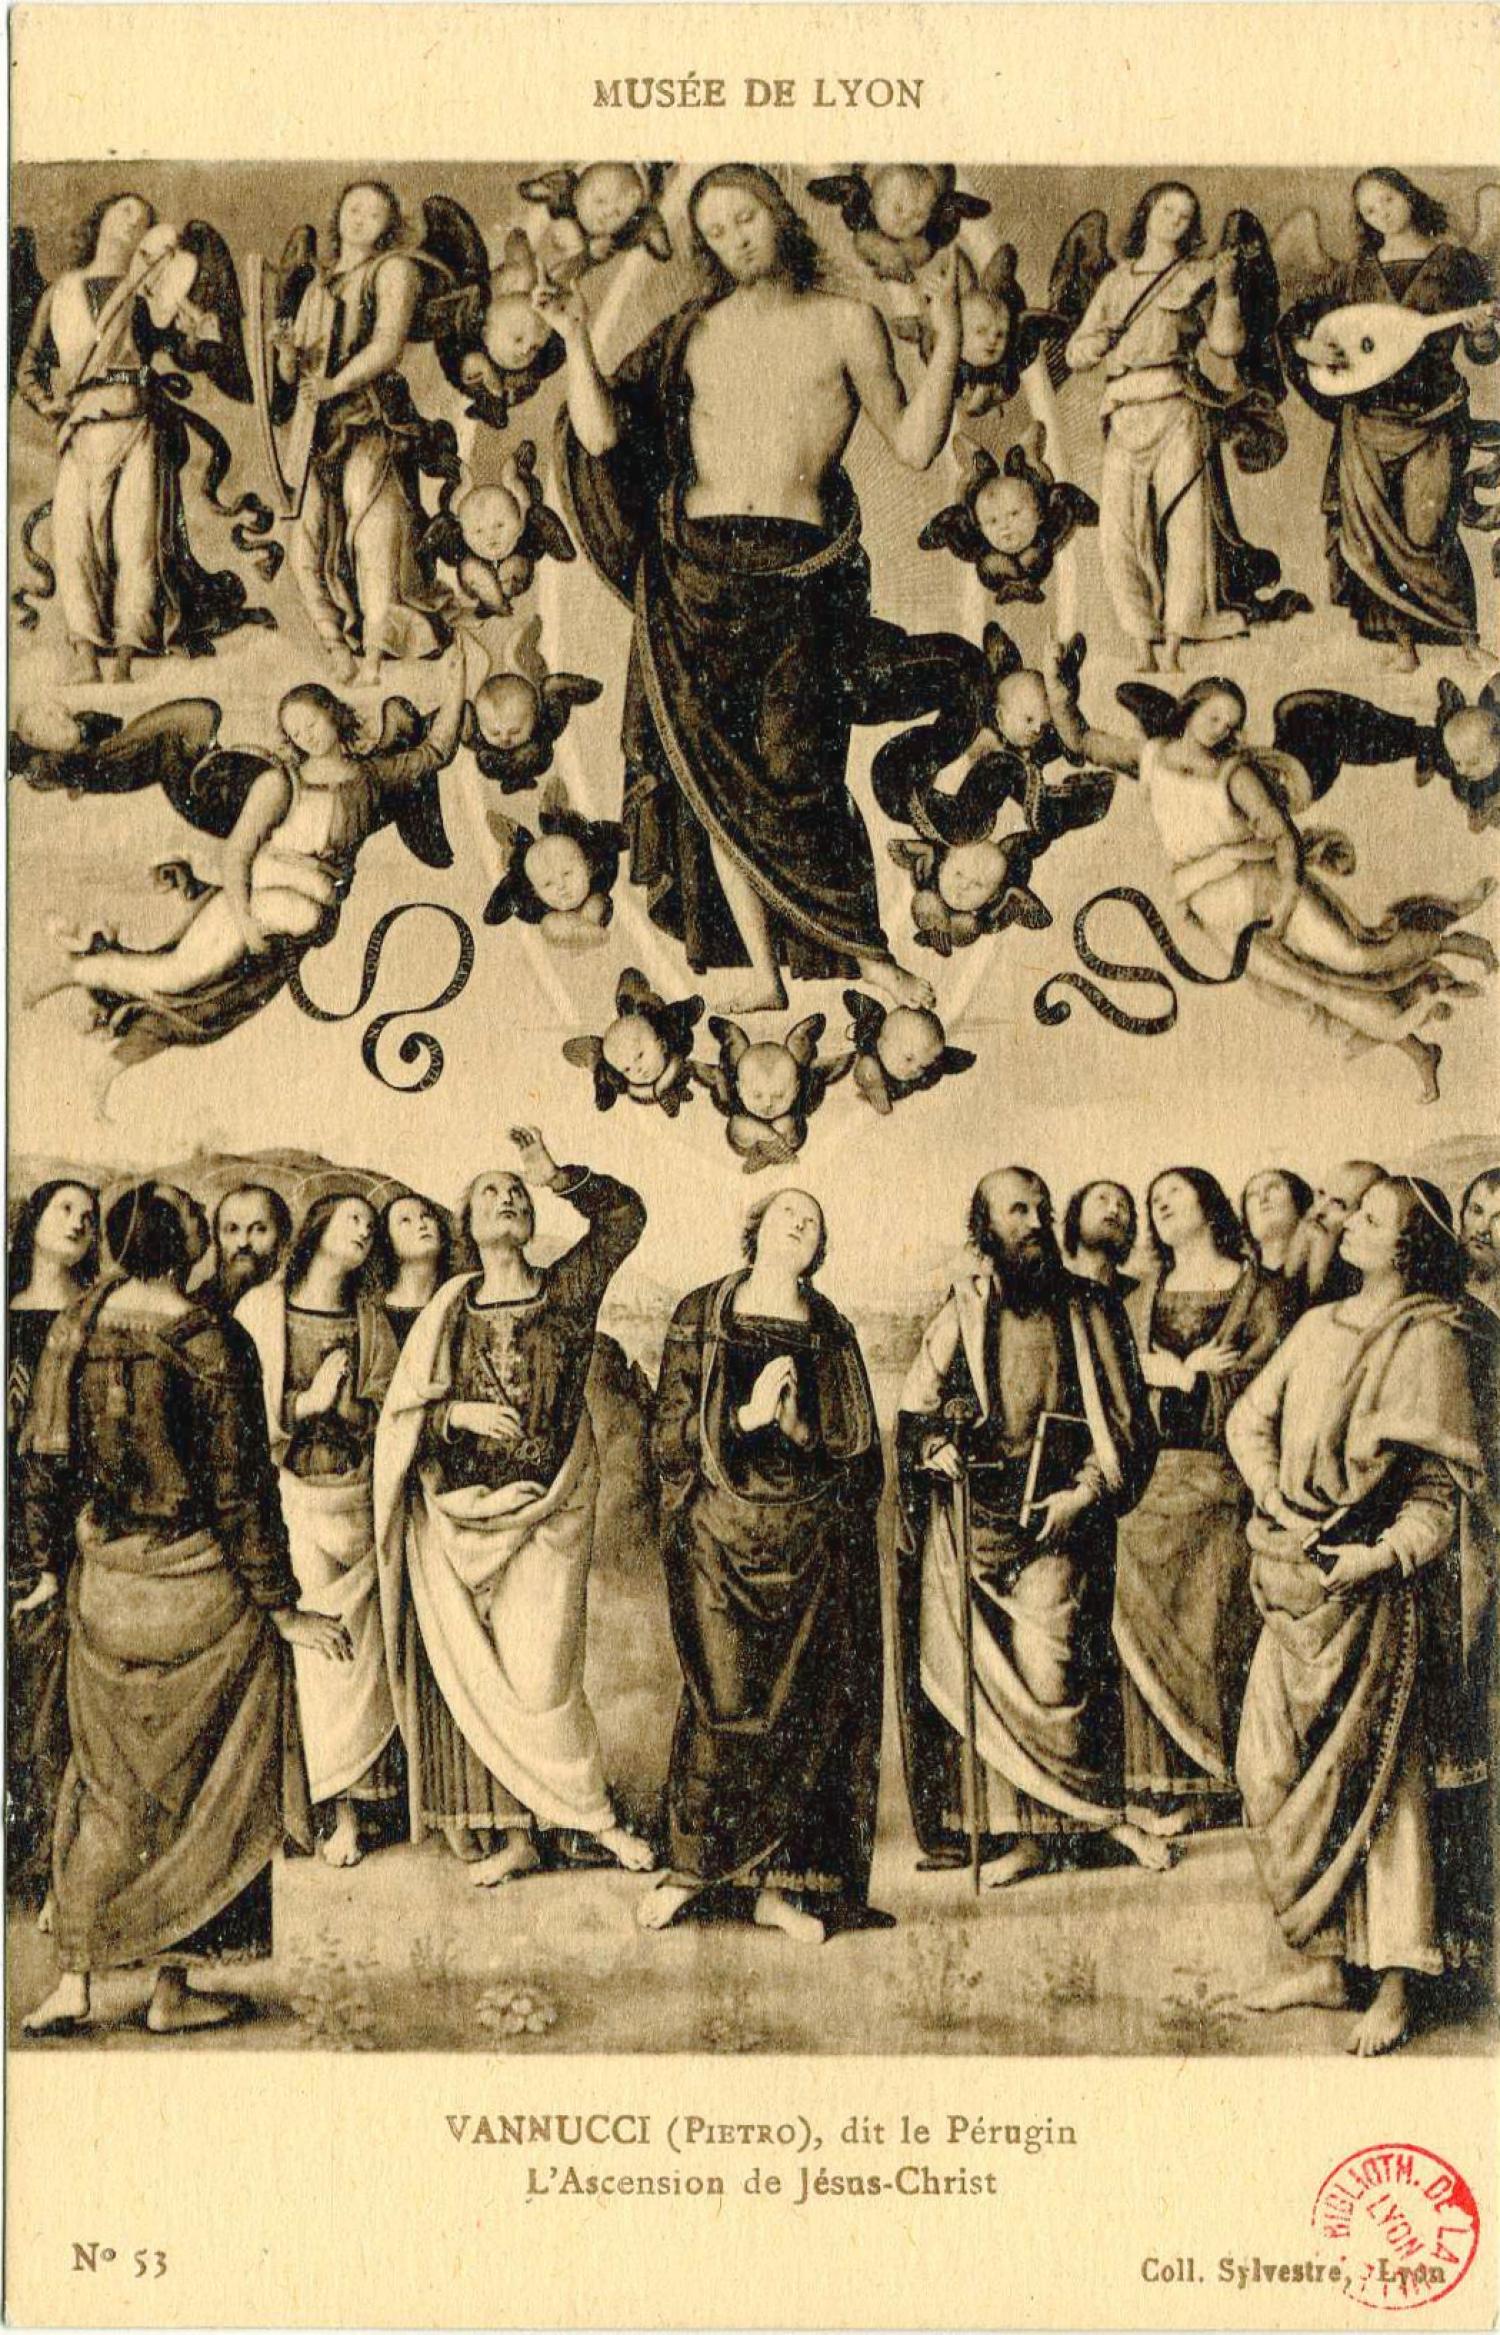 MUSÉE DE LYON : VANNUCCI (Pietro), dit le Pérugin ; L'ascension de Jésus-Christ